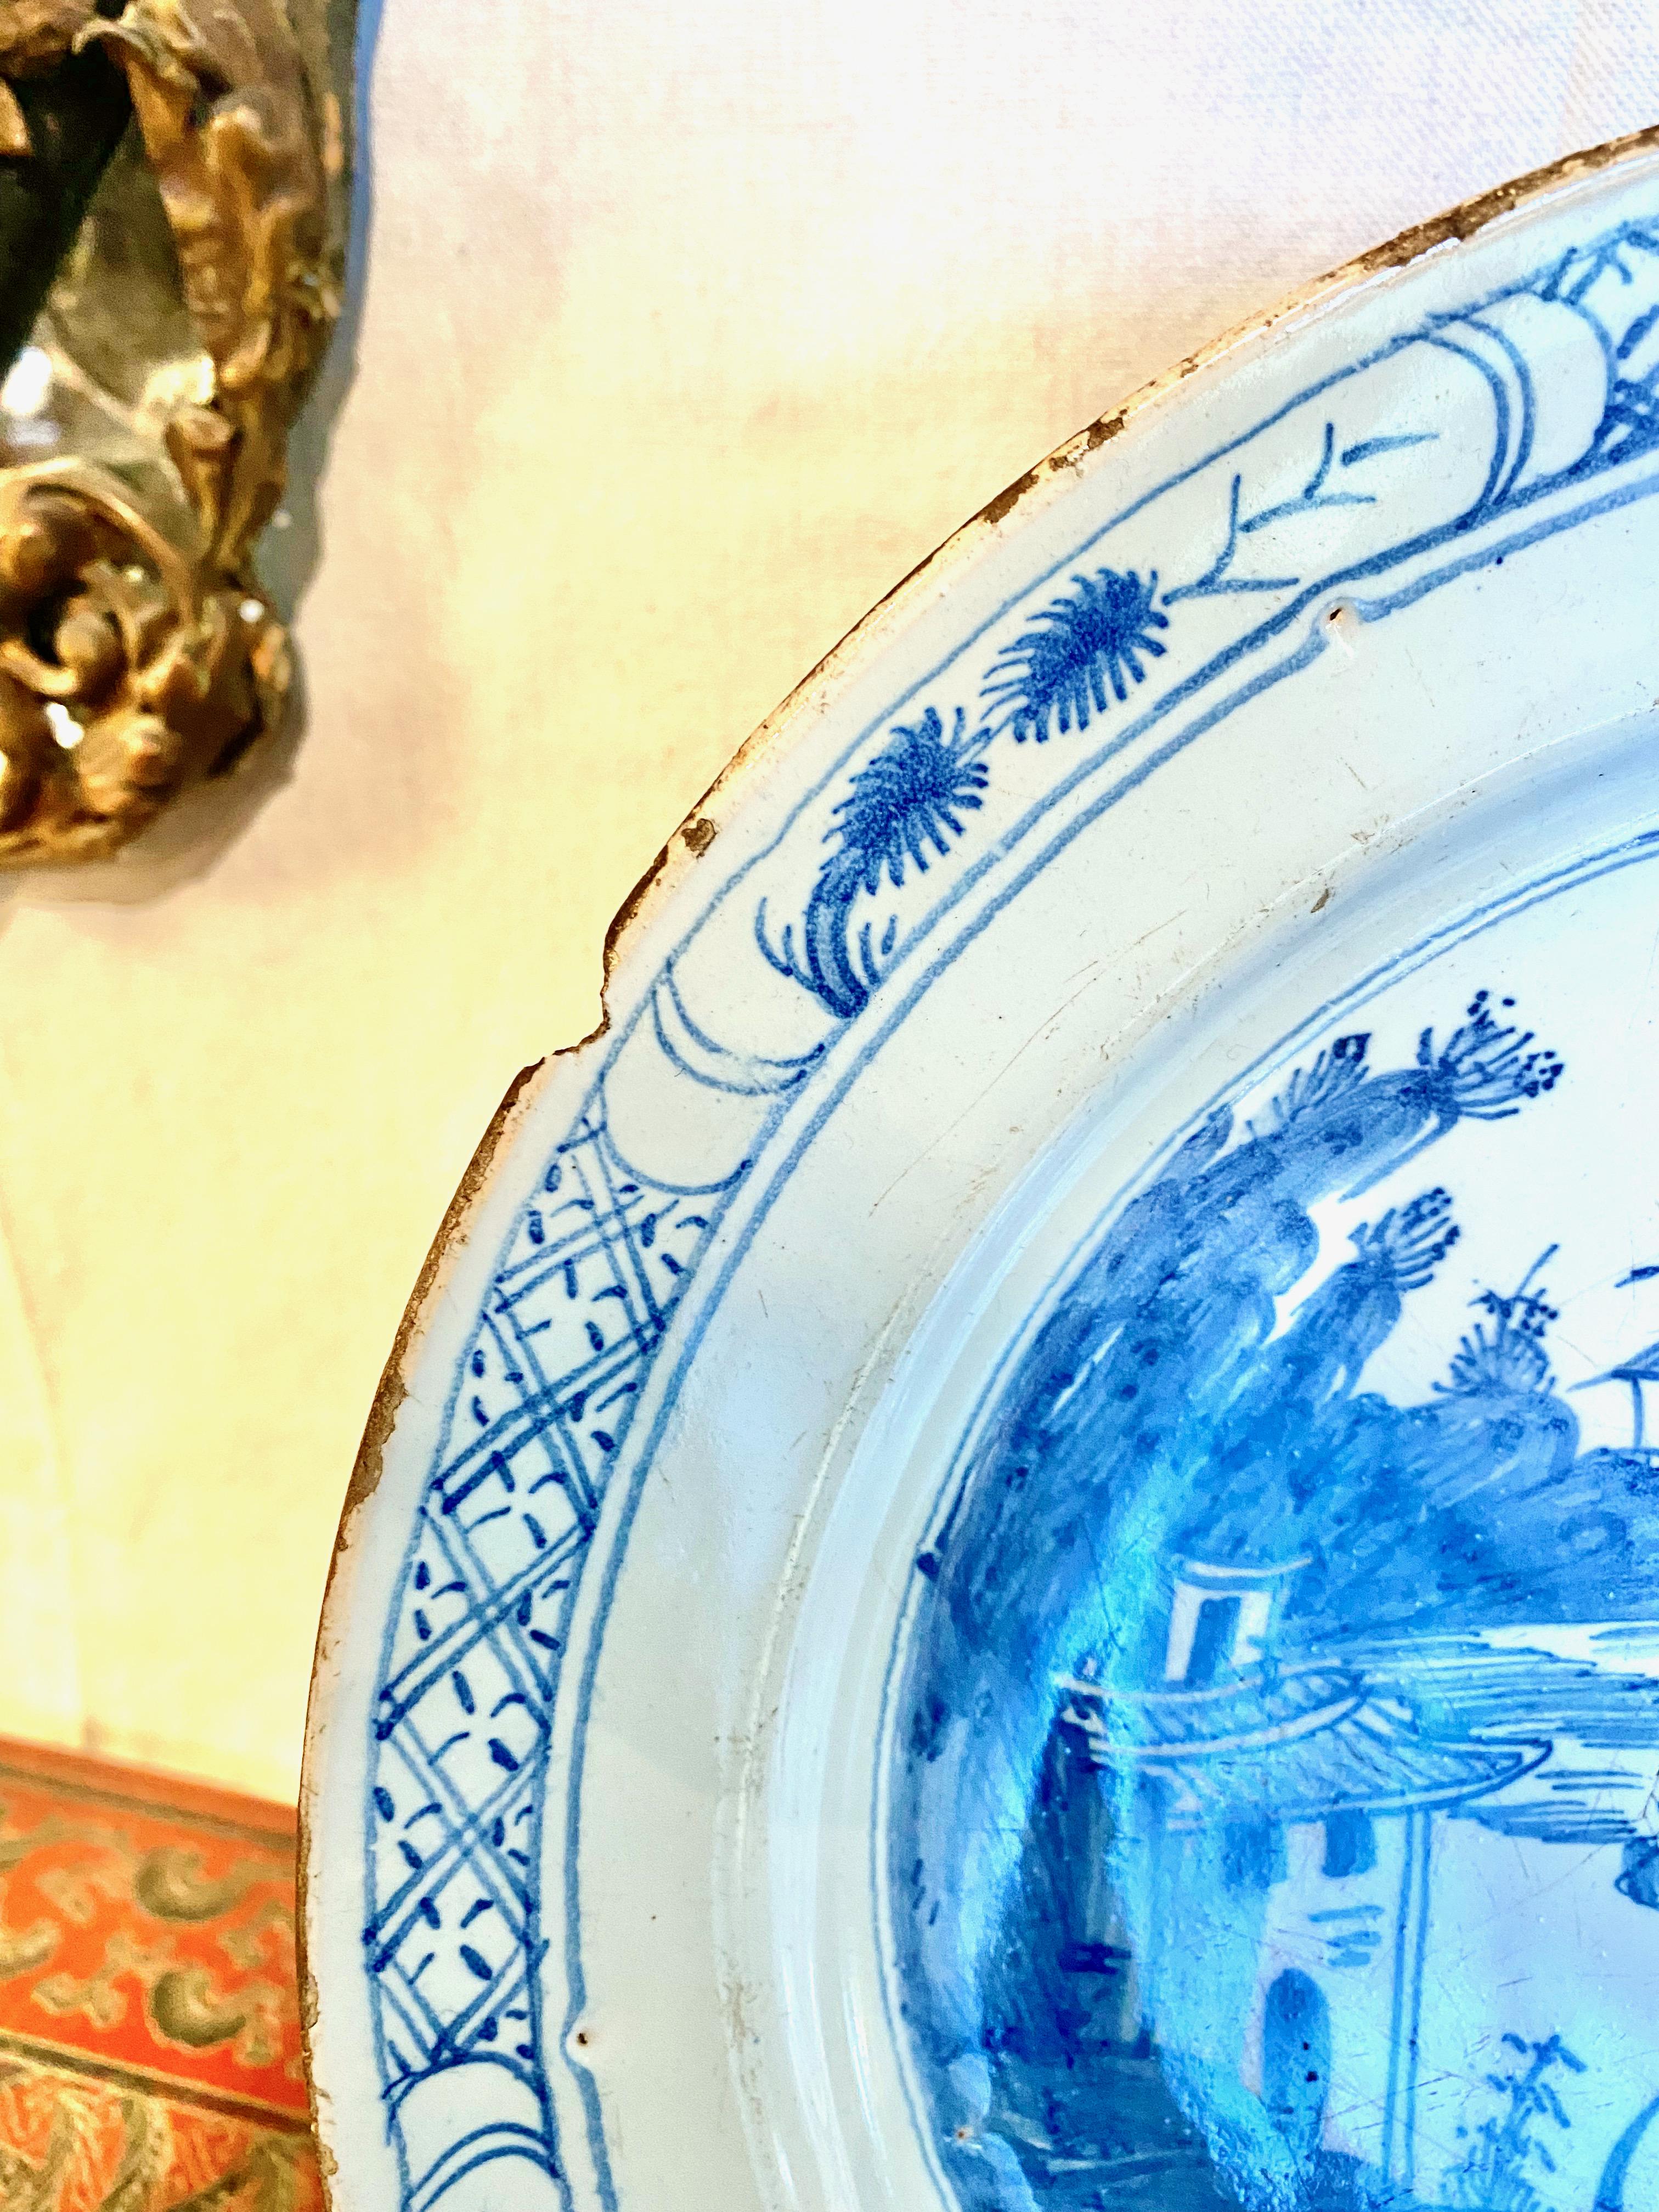 Dies ist ein gutes Beispiel für ein Delfter Ladegerät aus der Mitte des 18. Jahrhunderts mit einem handgemalten Chinoiserie-Muster. Die Keramik ist handbemalt und zeigt eine traditionelle blau-weiße Chinoiserie-Szene mit einer Pagode, einem See und